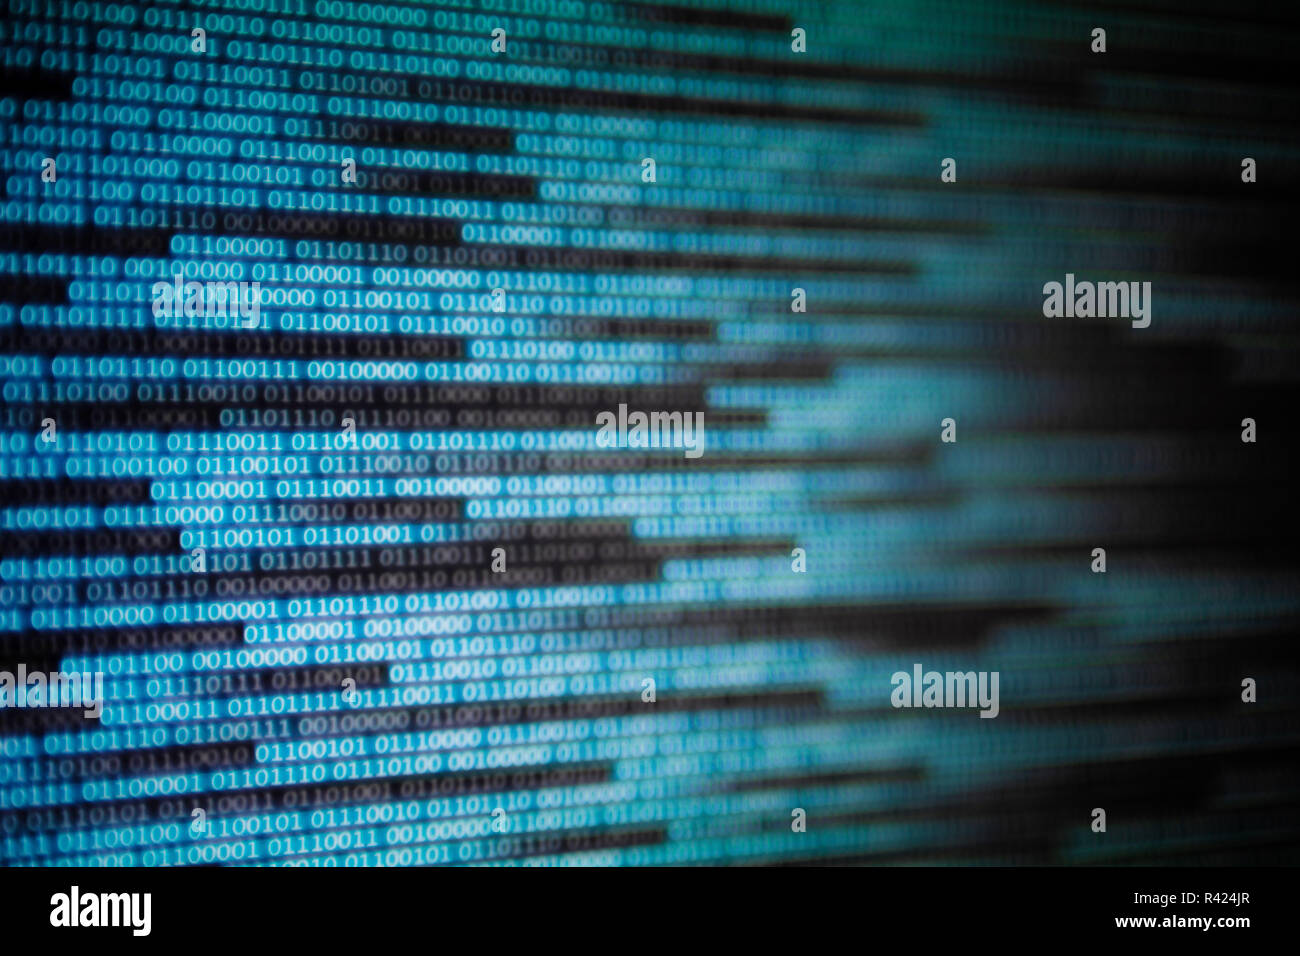 Cyberspace Datenübertragung Konzept. Blau ist der binäre Code. Computer Computer KI Intelligenz Daten internet verbindung Konzepte. Foto von Bildschirm dis Stockfoto